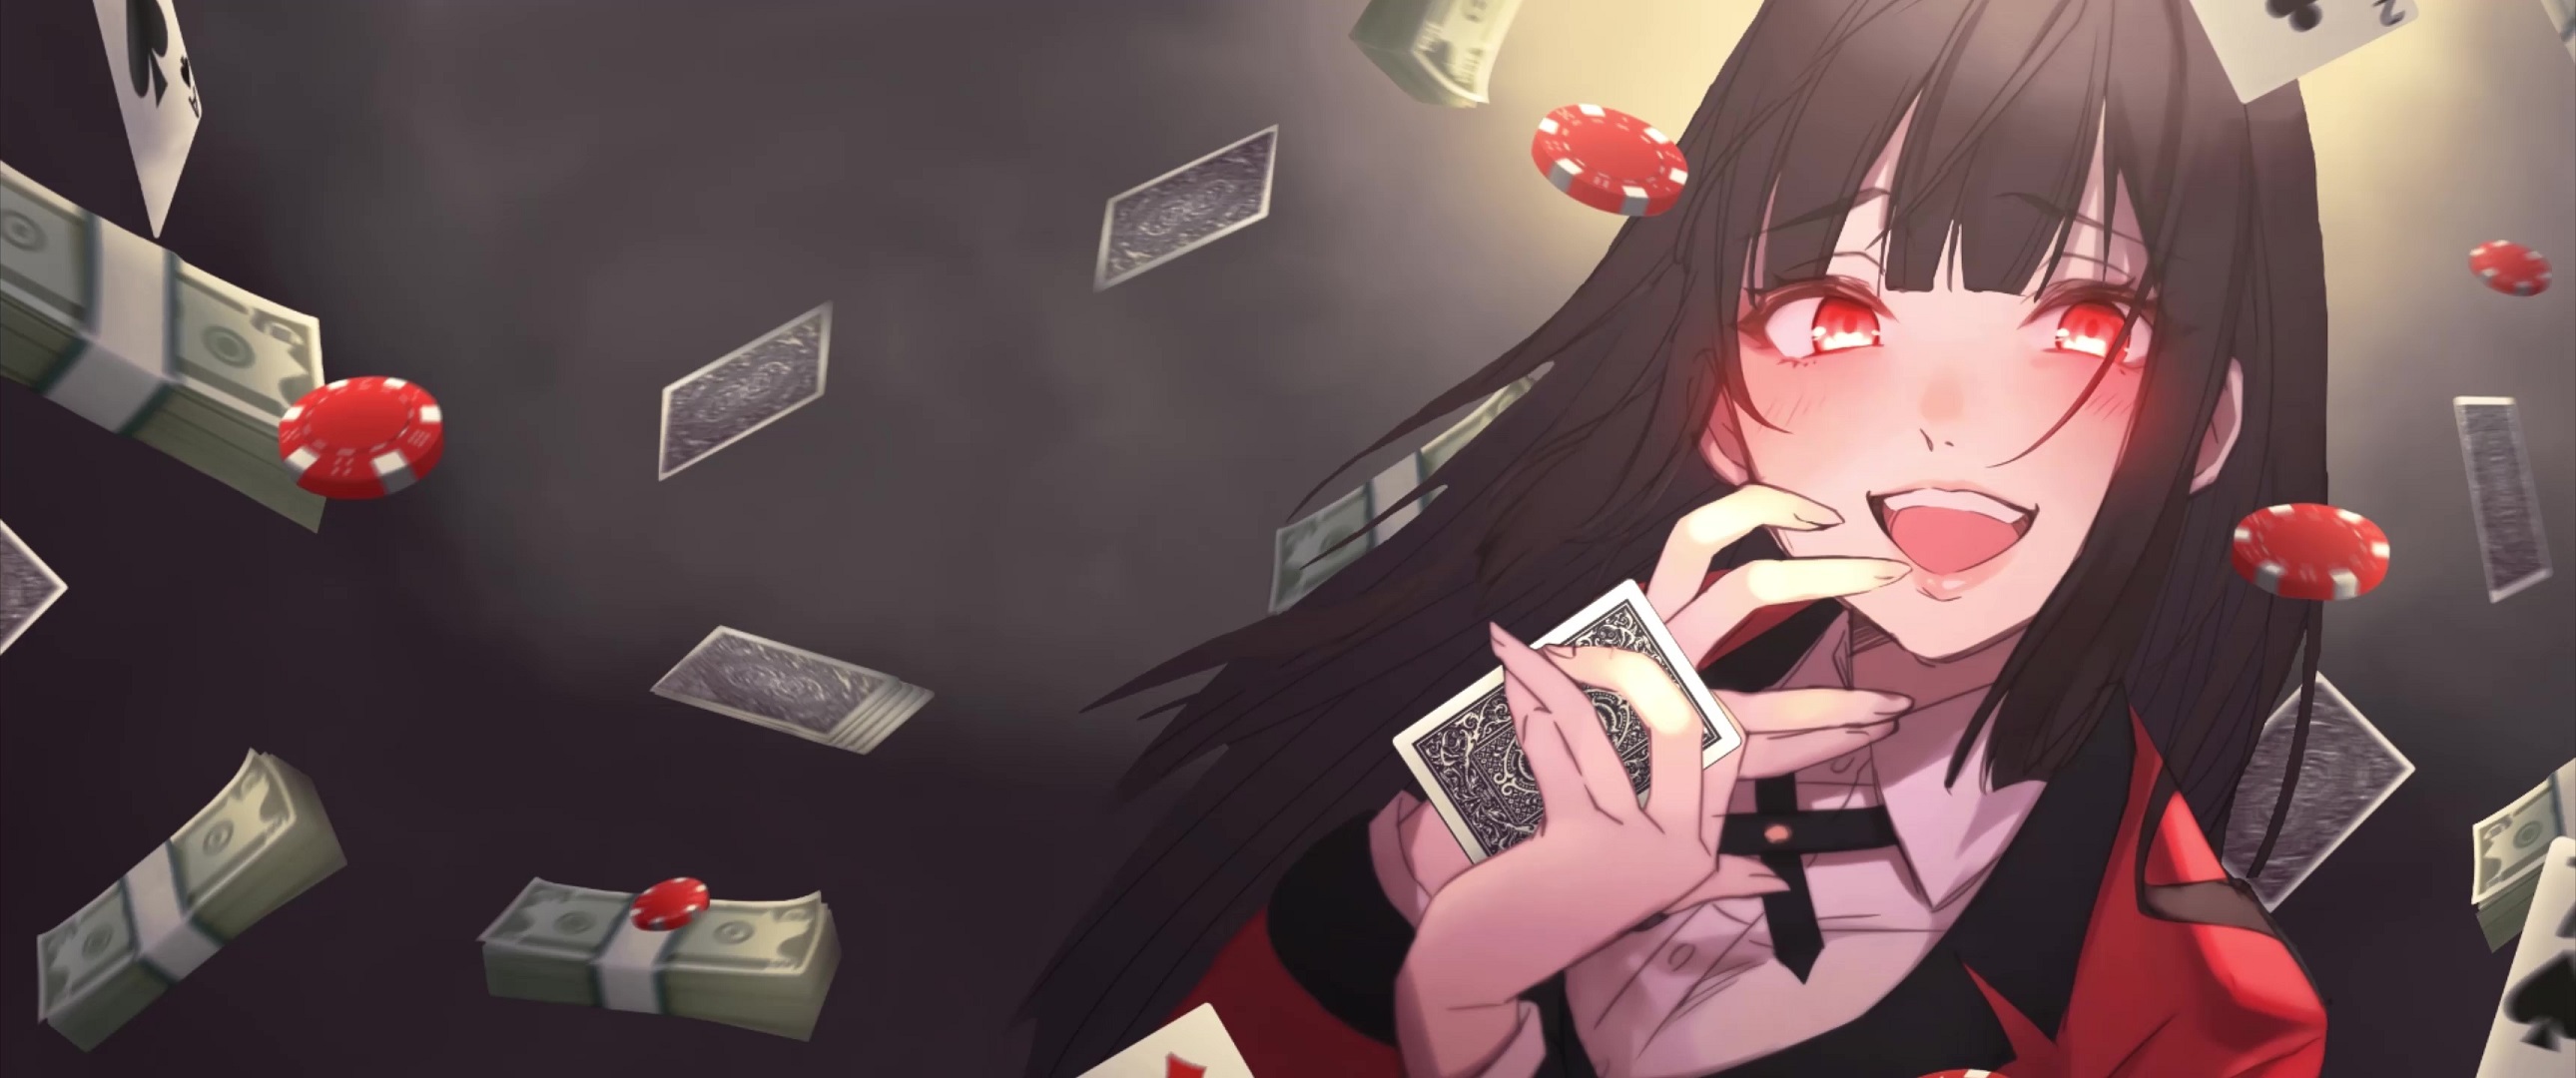 Kakegurui Episode 12 Reaction | Gambling Woman - YouTube